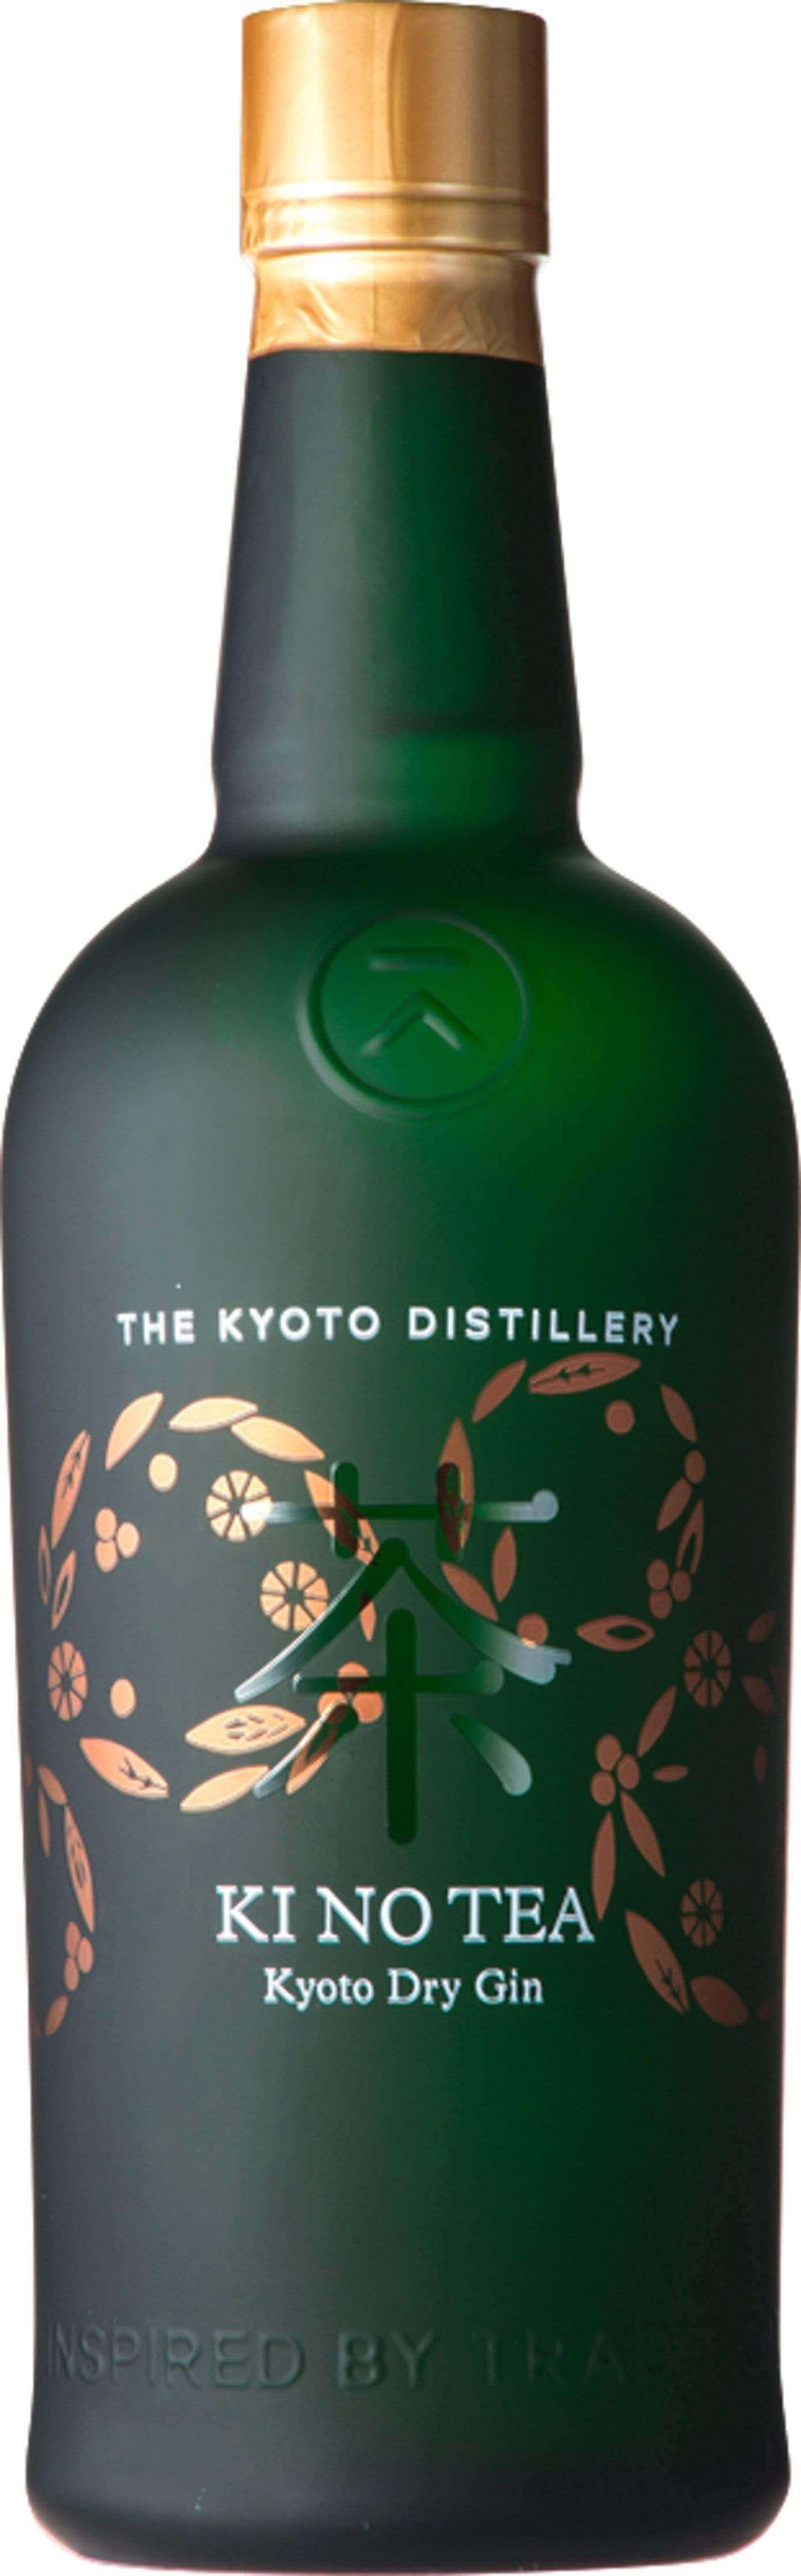 Ki No Tea Kyoto Dry Gin 700ml-0